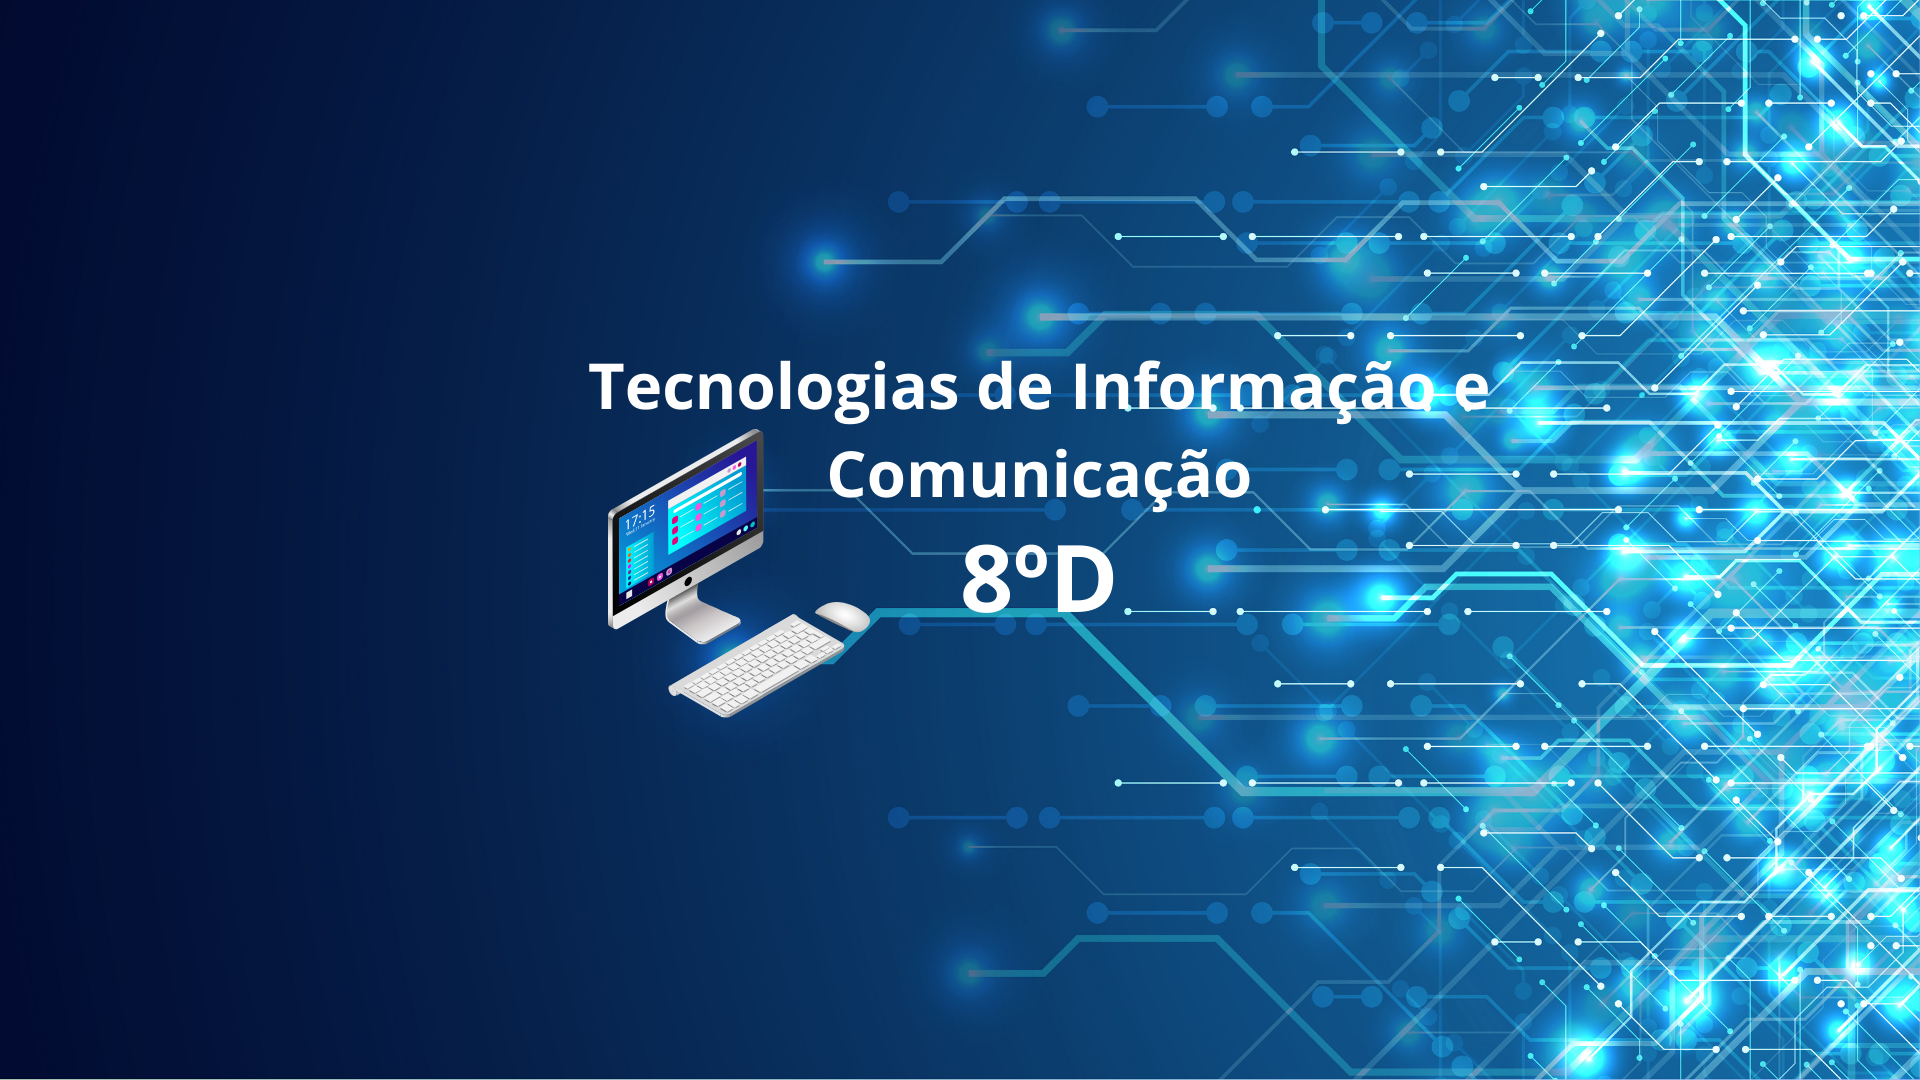 8D - Tecnologias de Informação e Comunicação